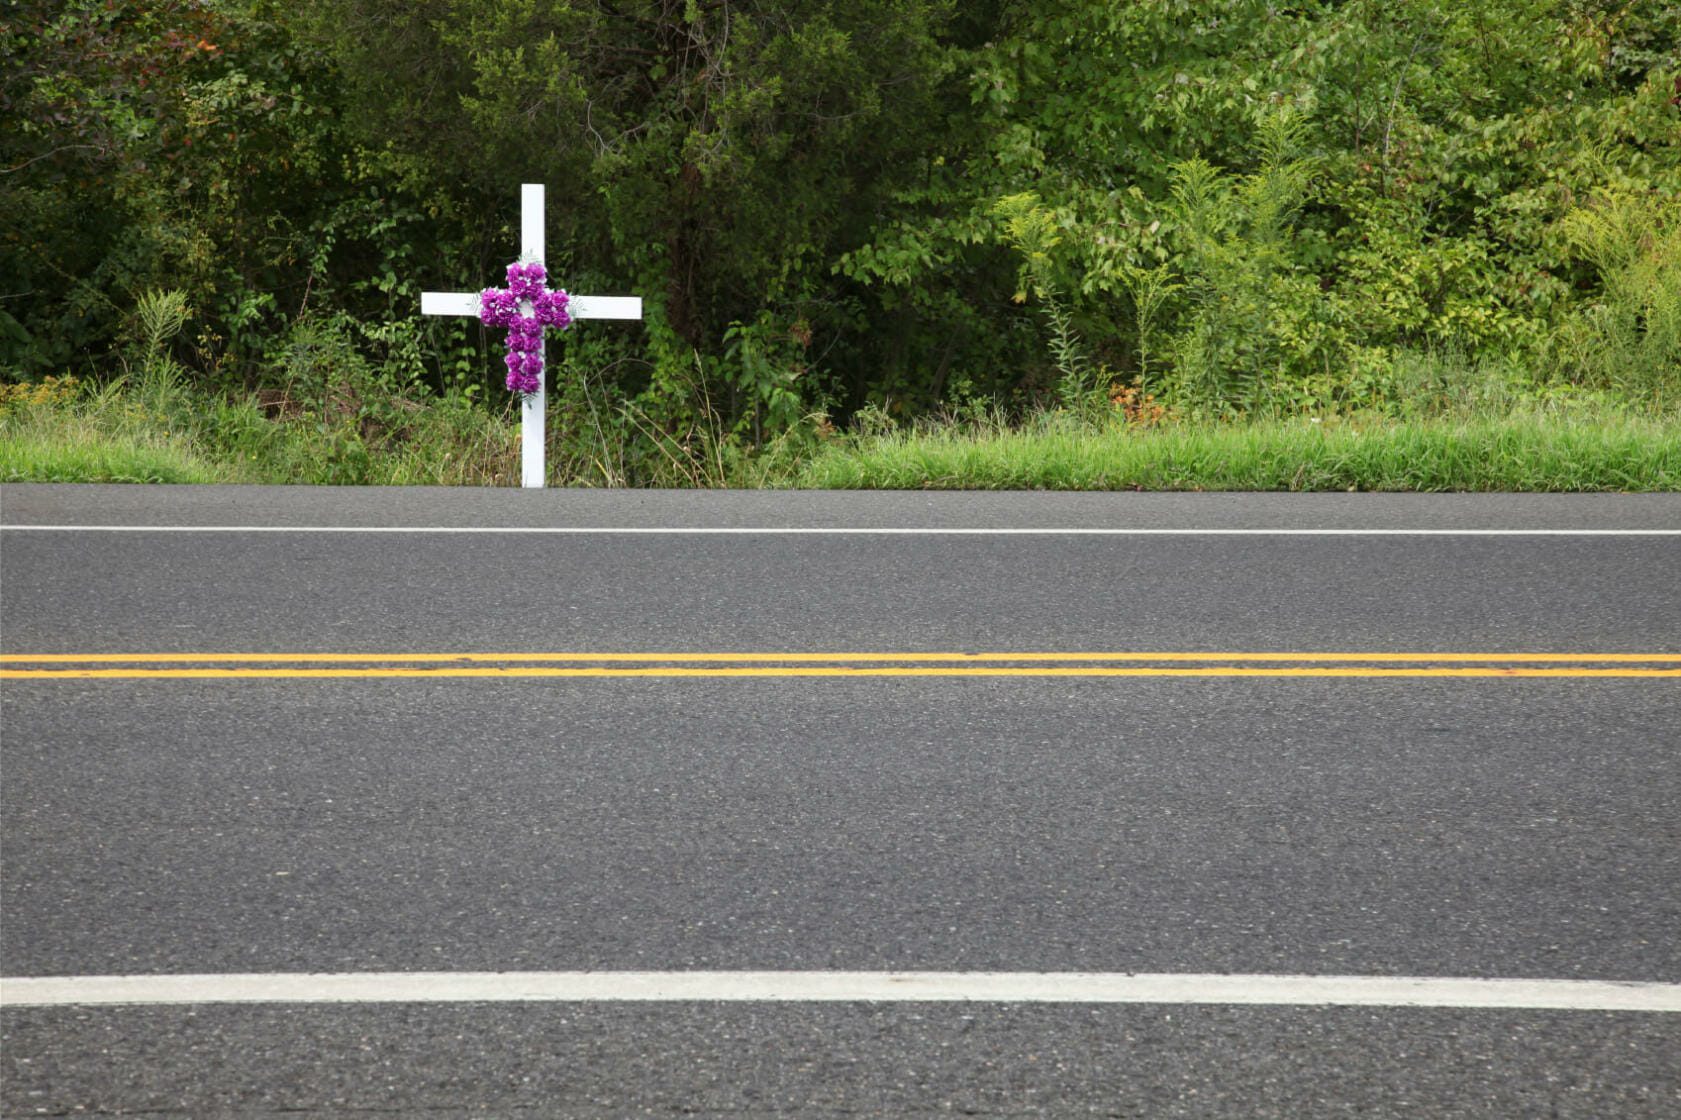 roadside memorial with wooden cross